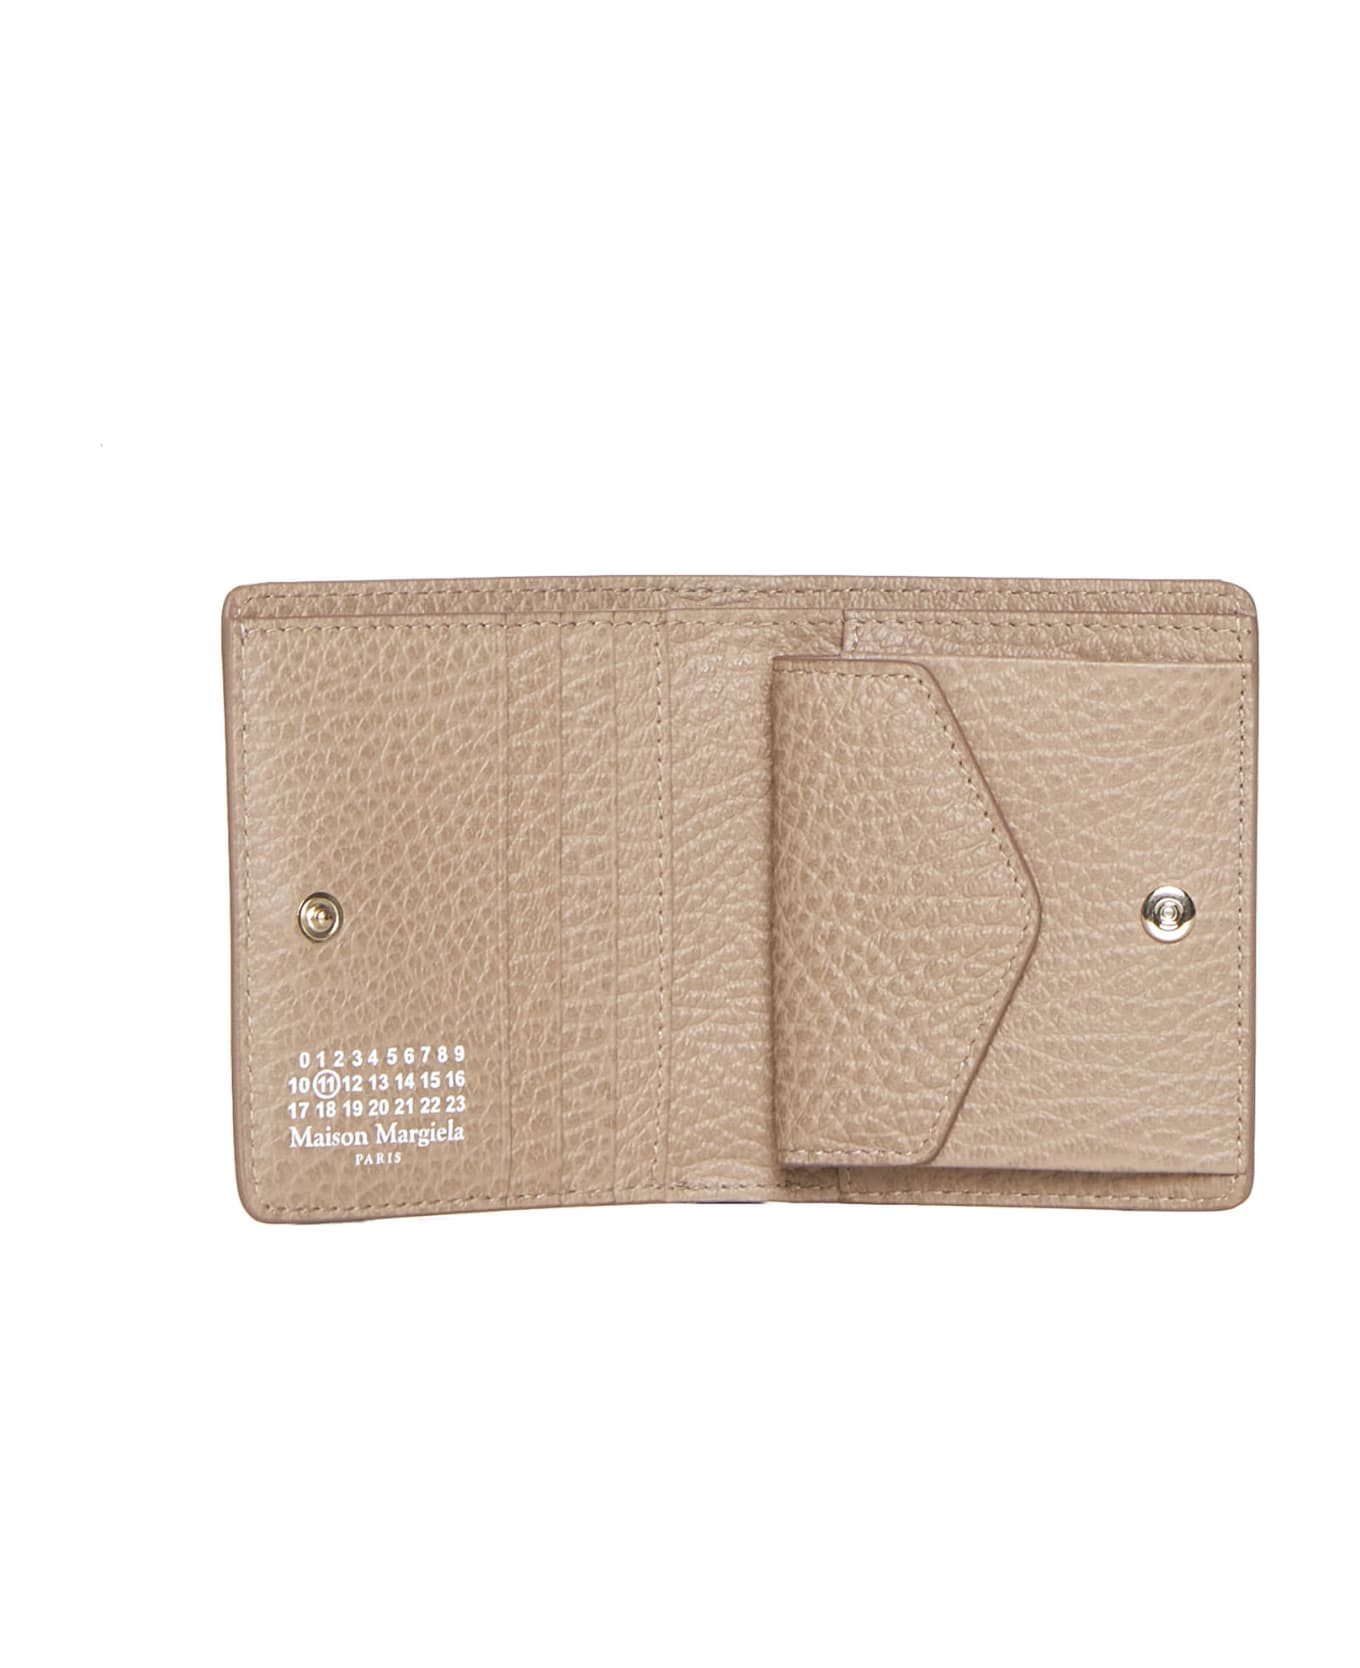 Maison Margiela Four-stitches Compact Wallet - Biche 財布